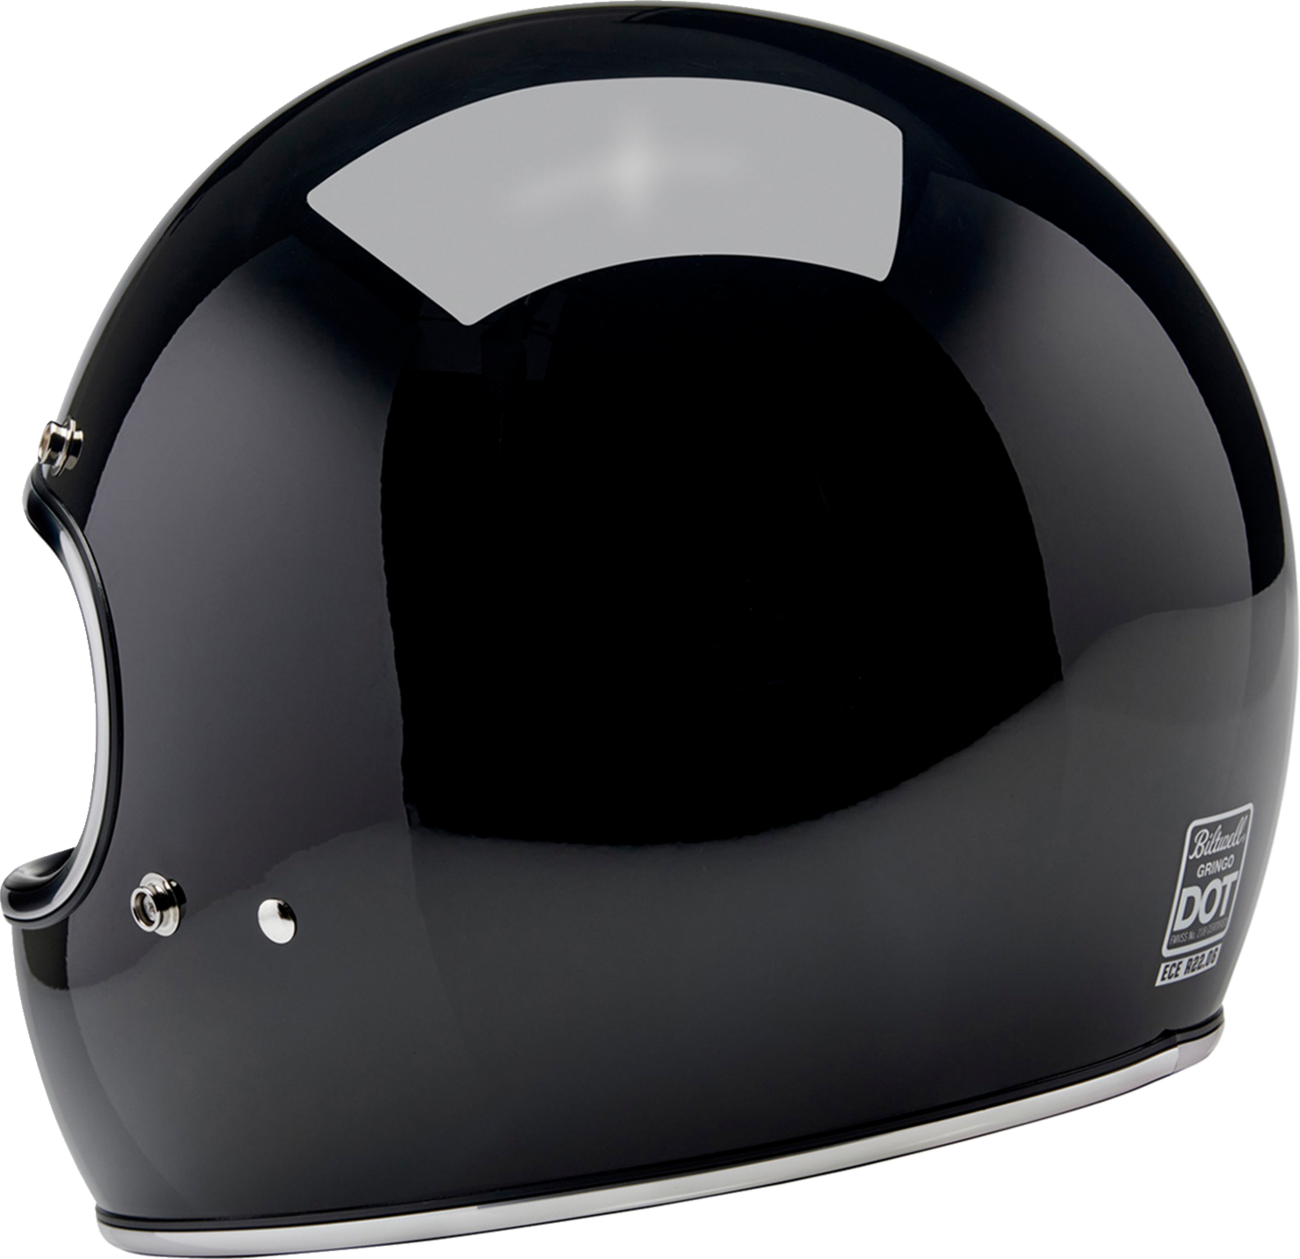 BILTWELL Gringo Helmet - Gloss Black - Small 1002-101-502